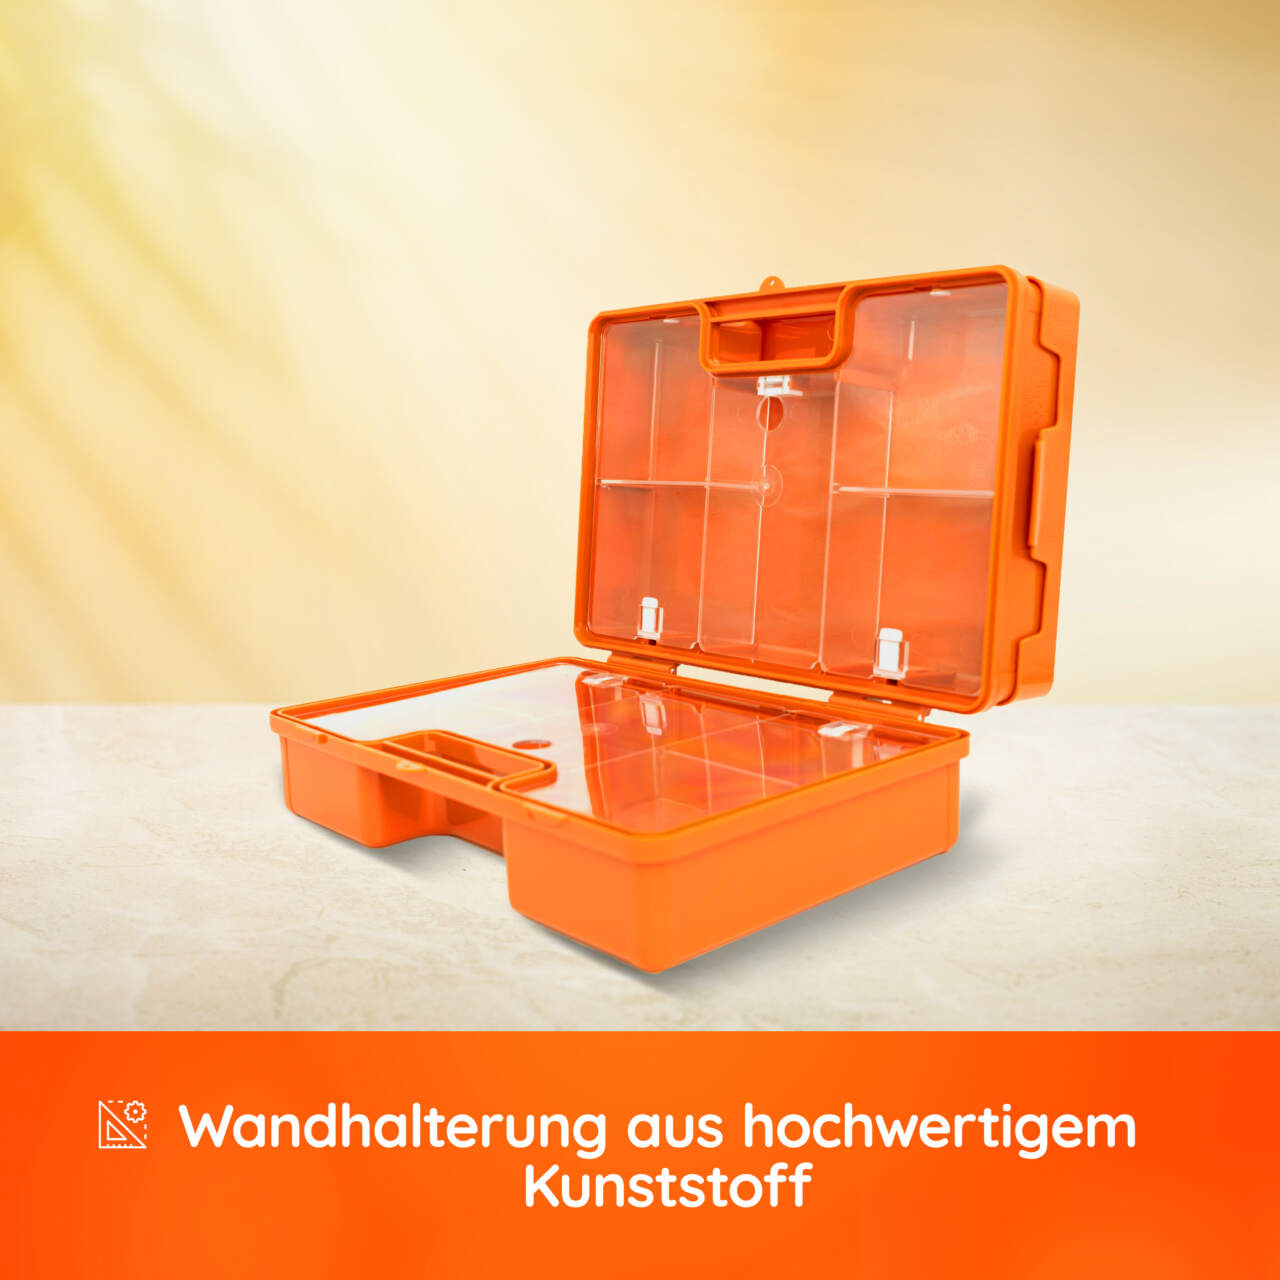 Multi Erste-Hilfe-Koffer 40 x 30 x 15 cm, leer, orange günstig kaufen.  Kofferausführung: Erste Hilfe Koffer Multi leer